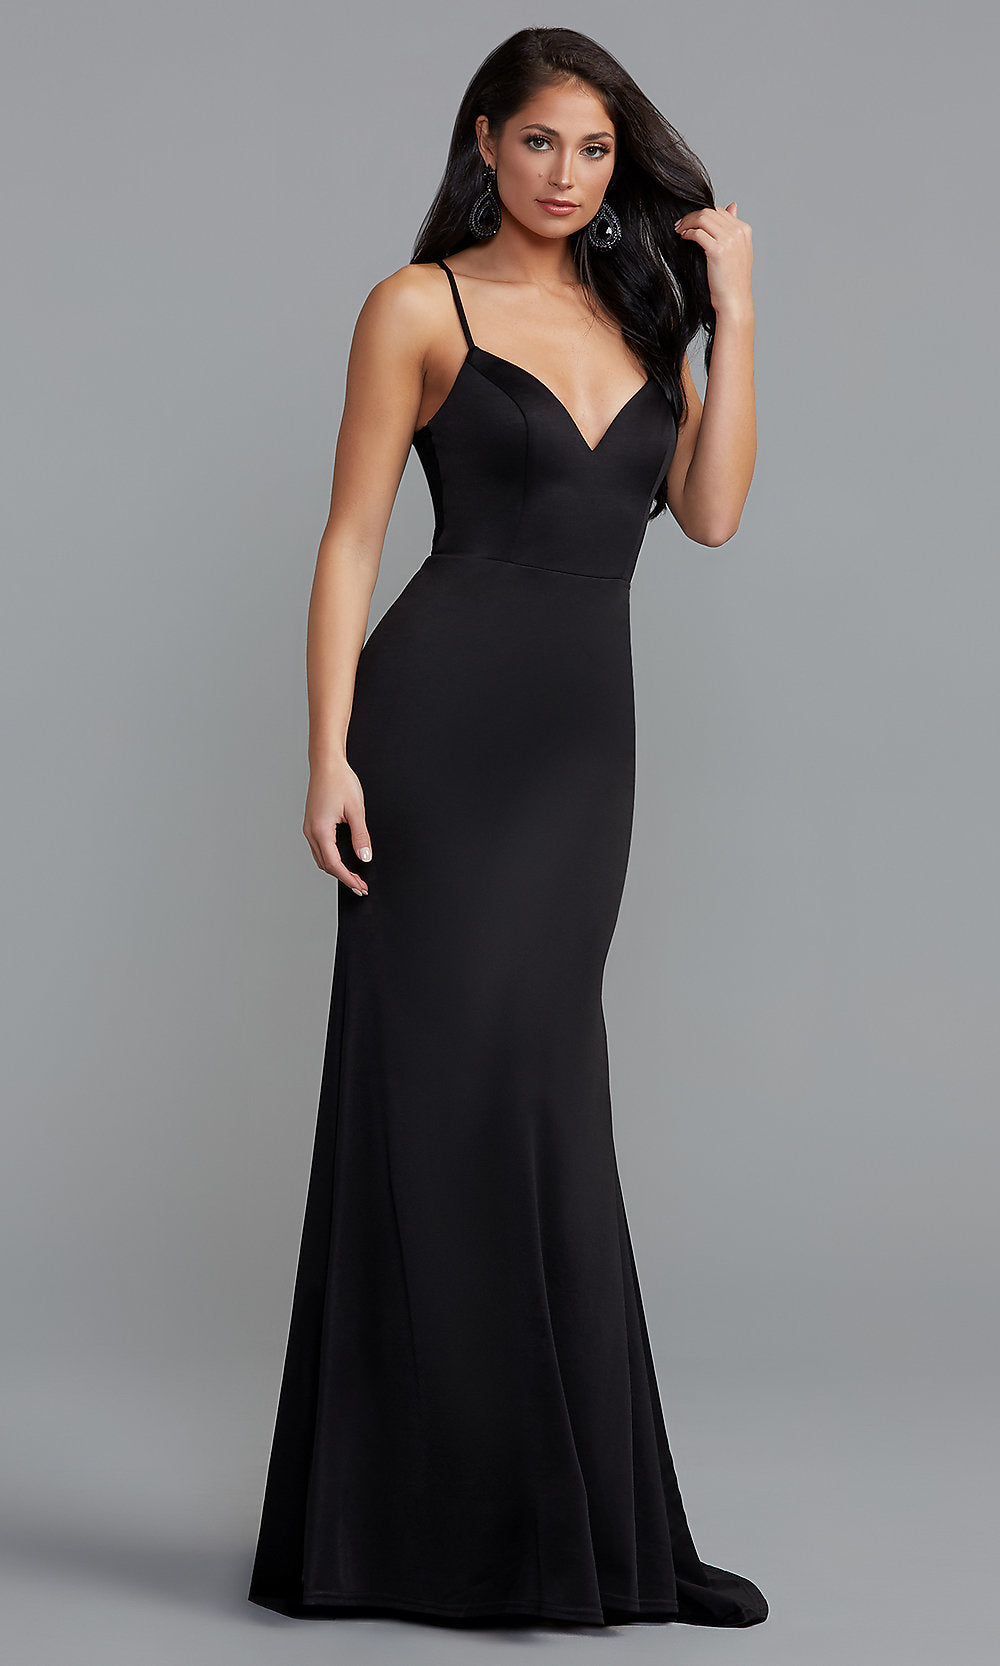 Formal Dresses, Black Formal Dress